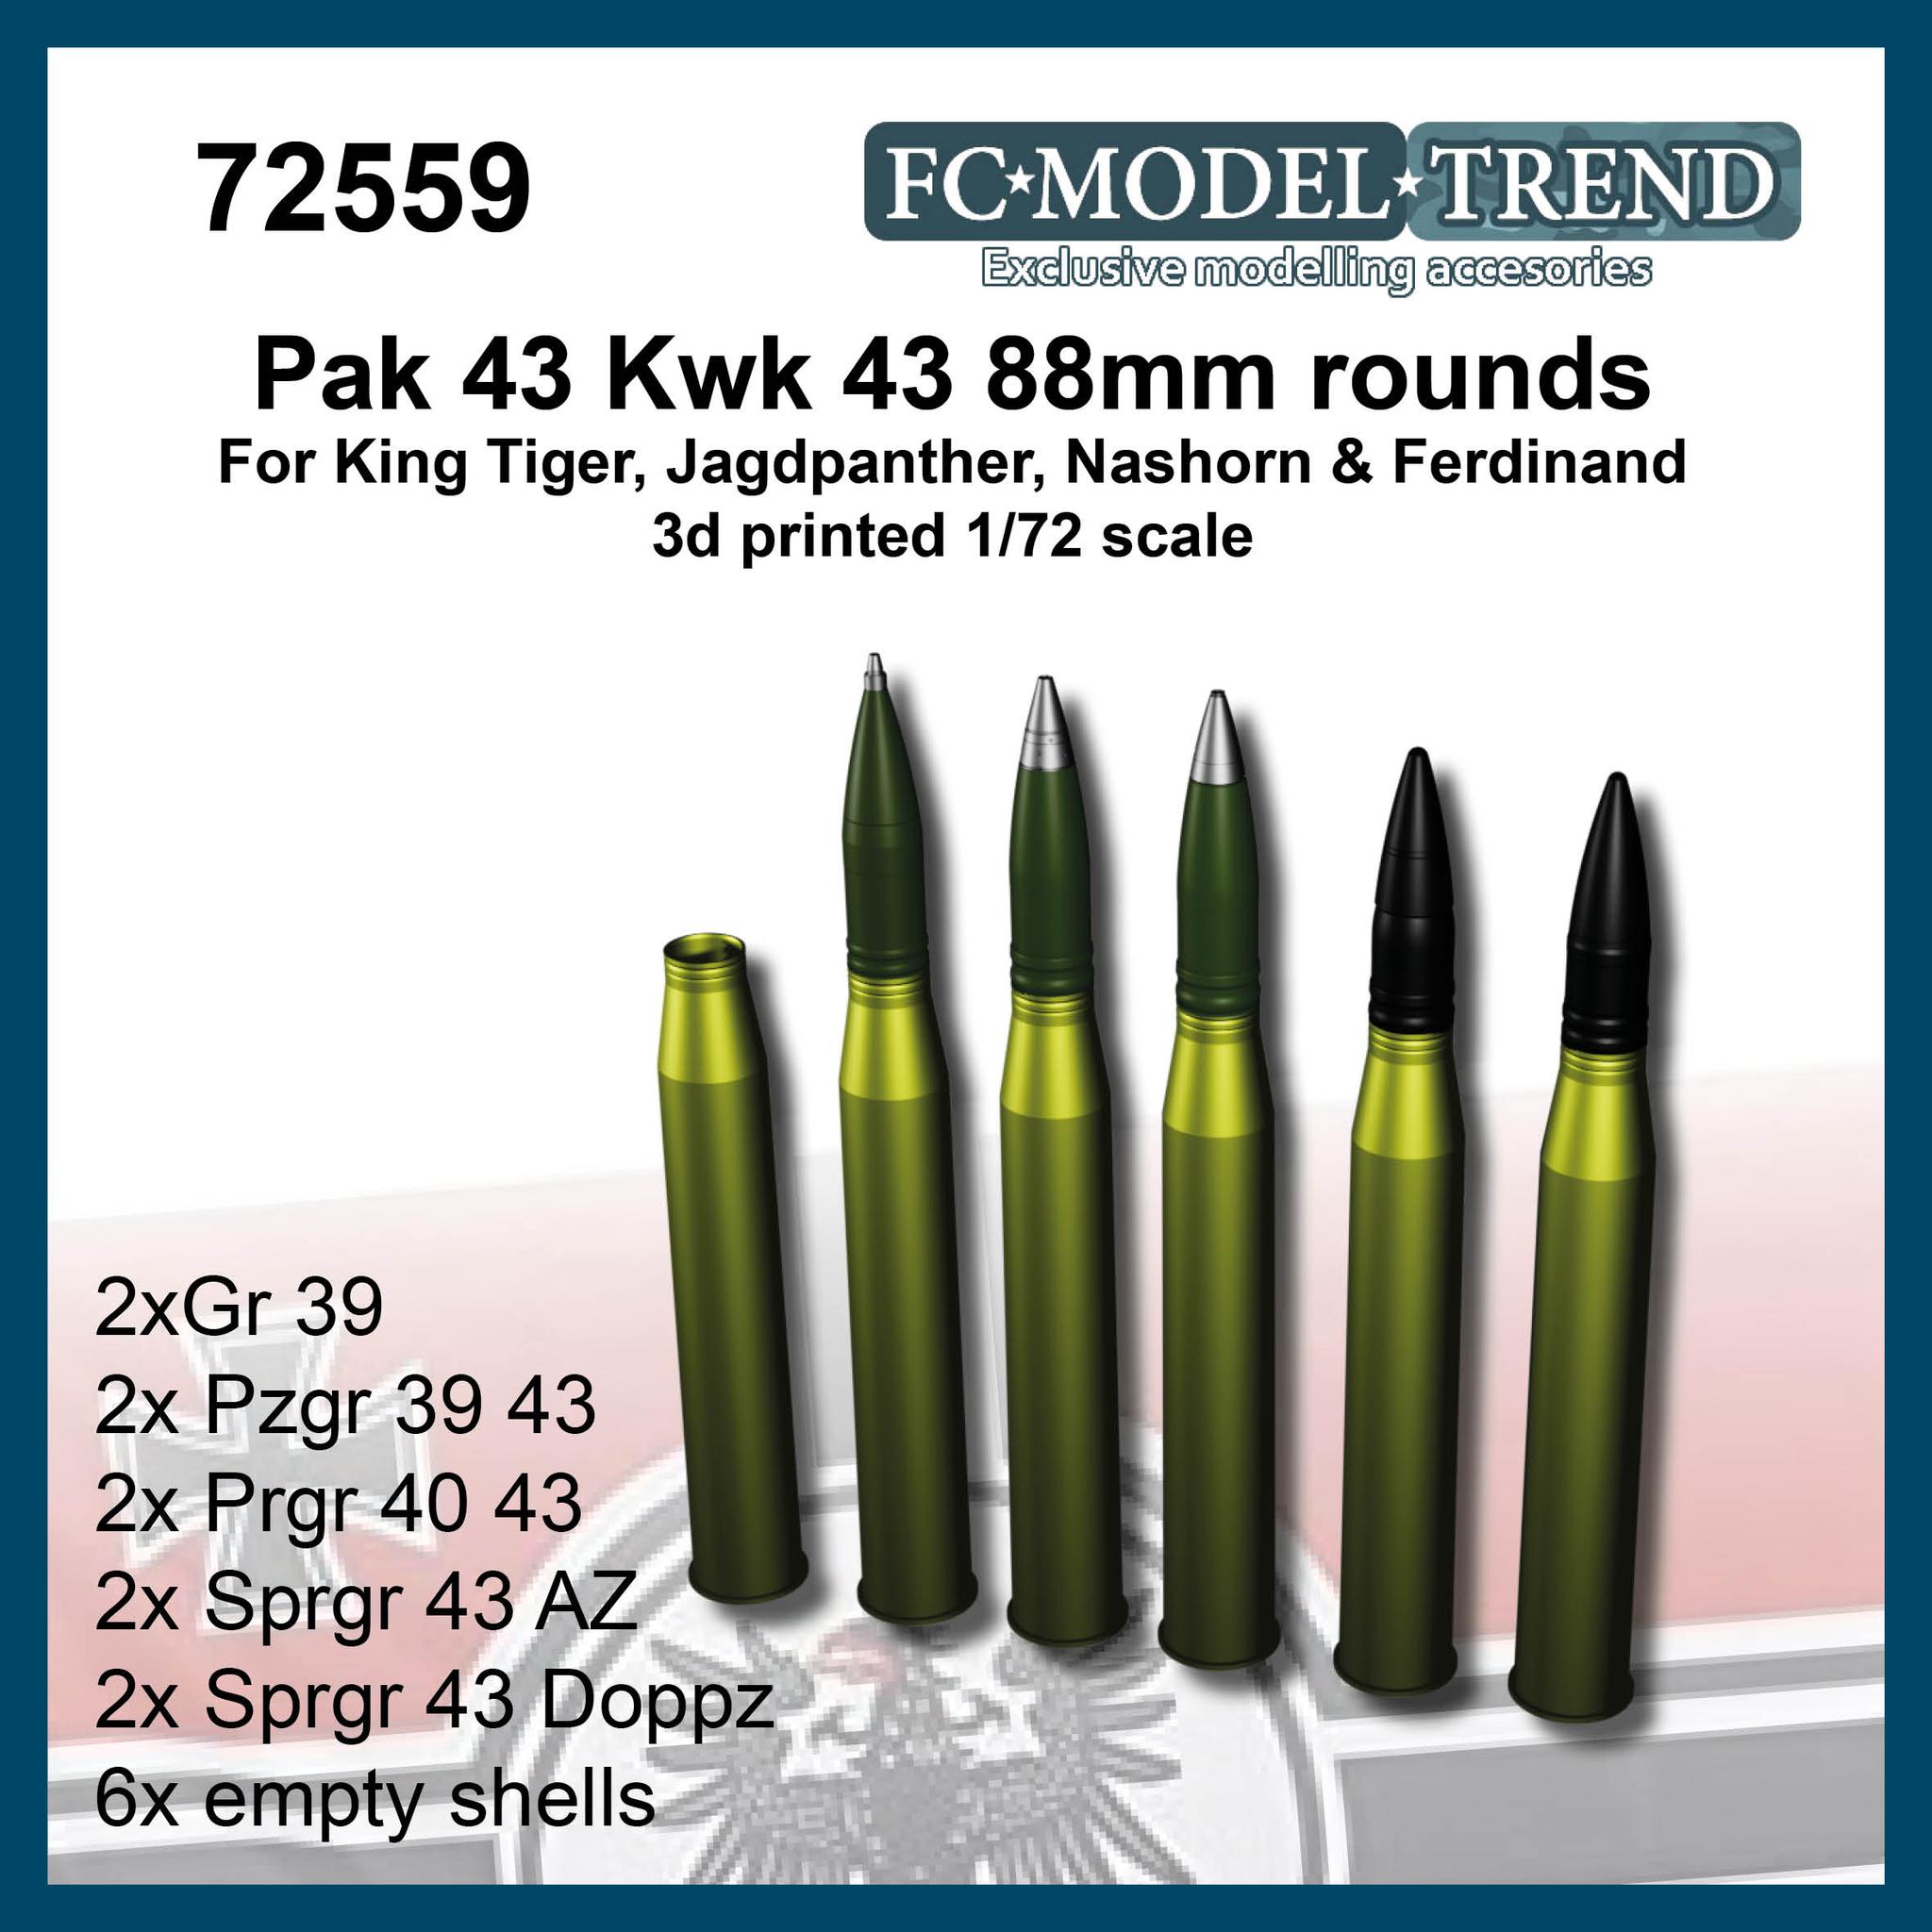 8.8cm Pak43/Kwk43 ammo